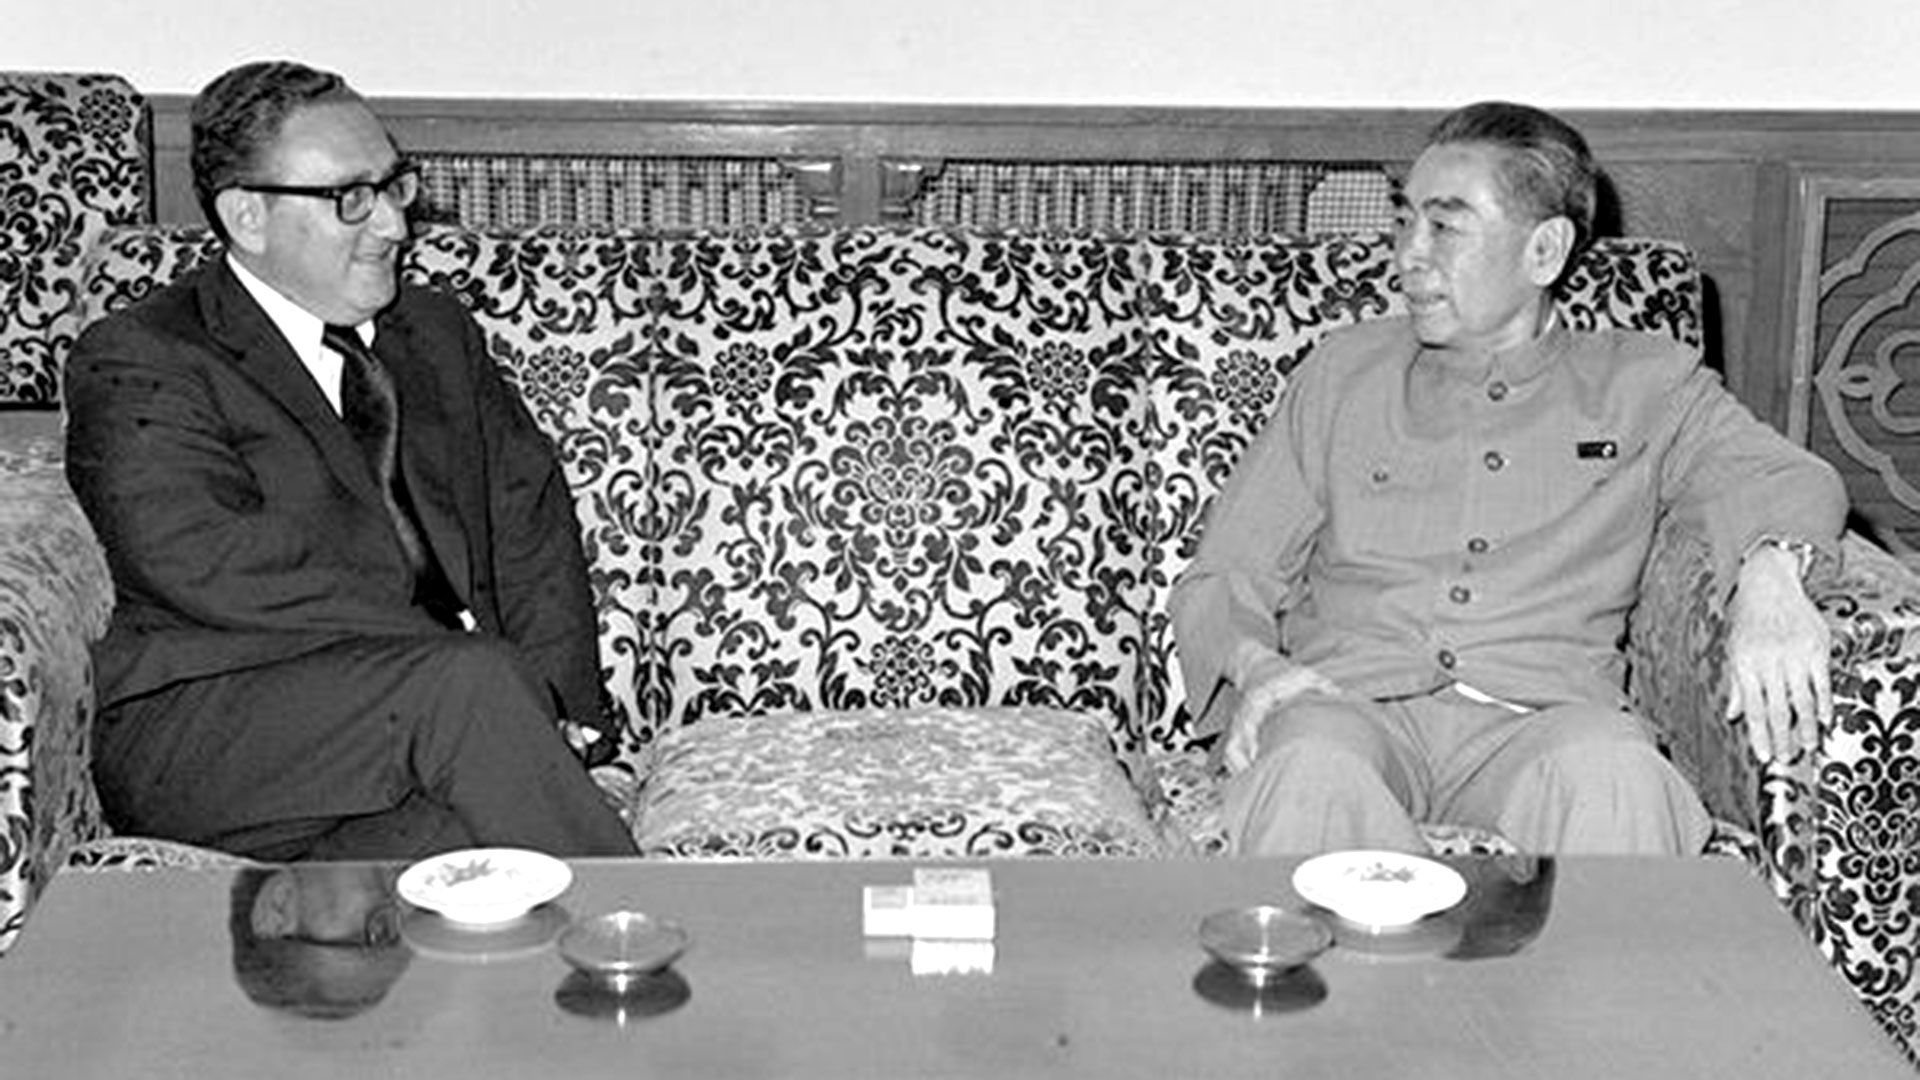 1971. Henry Kissinger junto con Zhou Enlai, durante uno de los encuentros que terminaron con el acercamiento histórico entre los Estados Unidos y China a comienzos de los años 70, en plena Guerra Fría con la Unión Soviética (White House Photo)